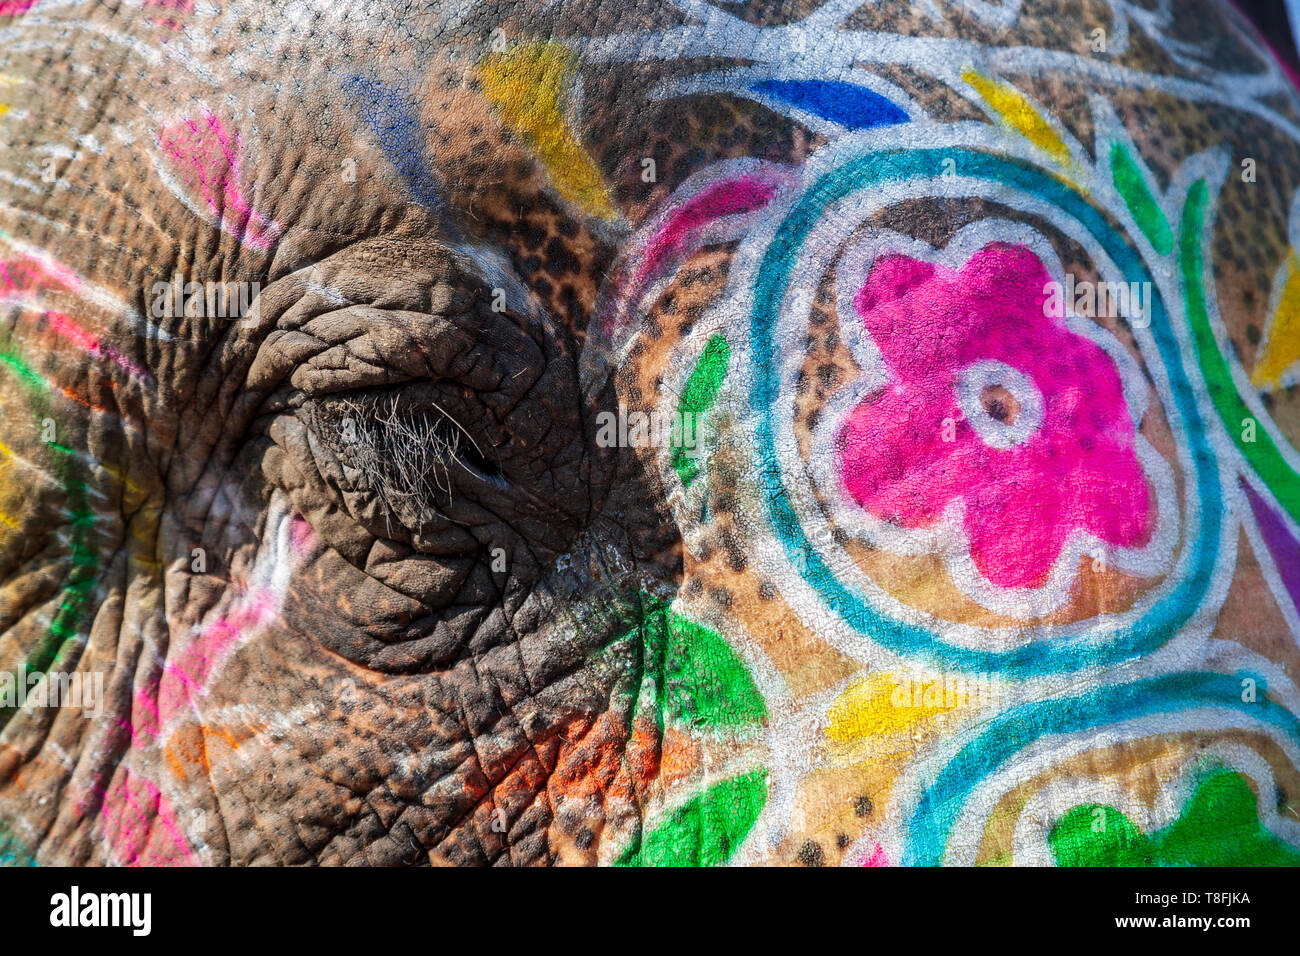 Close-up de l'œil et de la peau d'un éléphant indien peint, Rajasthan, Inde Banque D'Images